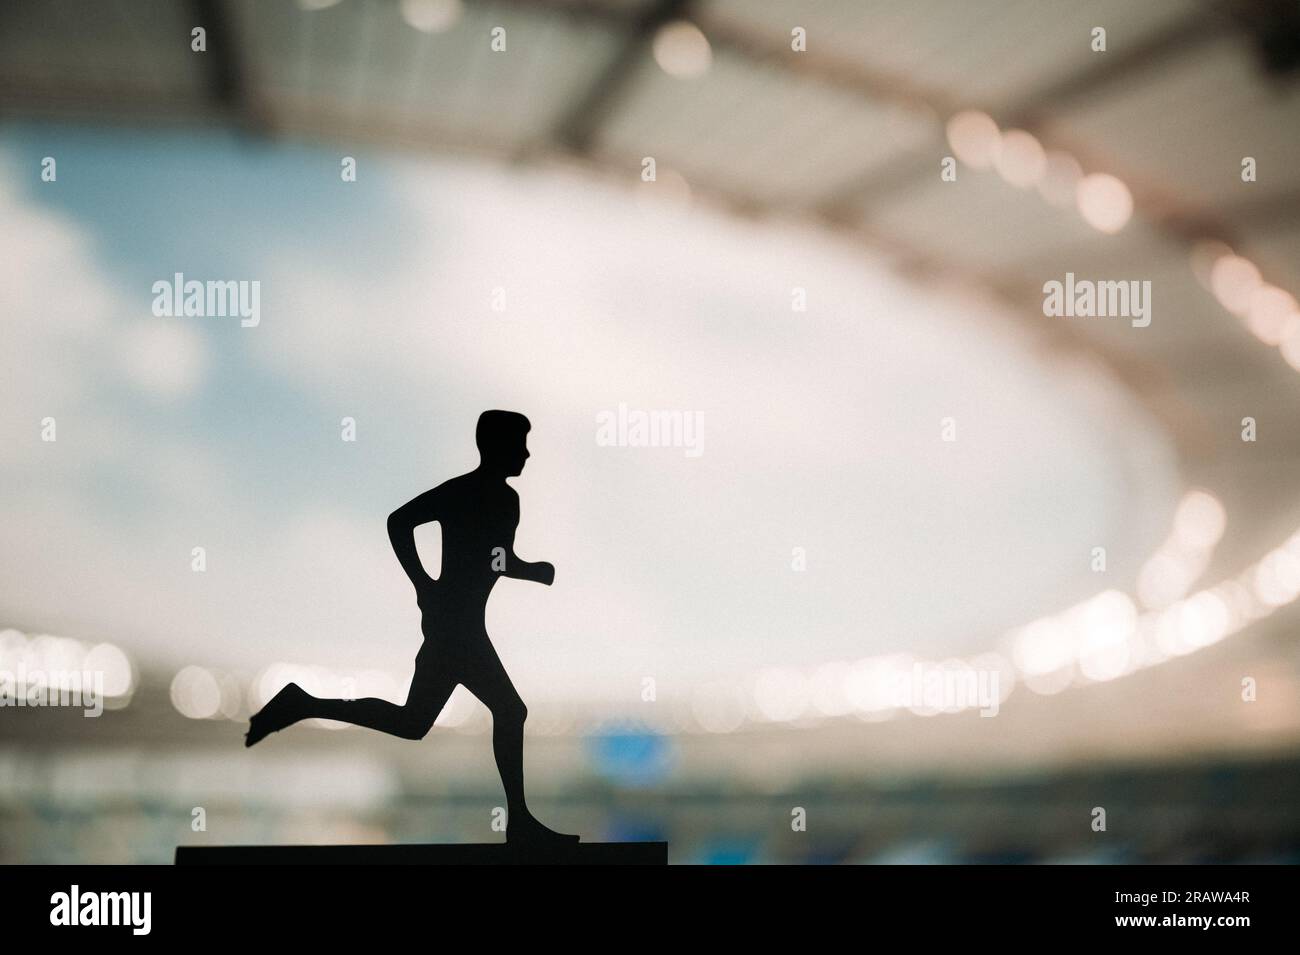 Silueta de un atleta masculino, un corredor de resistencia, prosperando bajo la encantadora luz de la tarde de un estadio deportivo moderno Foto de stock